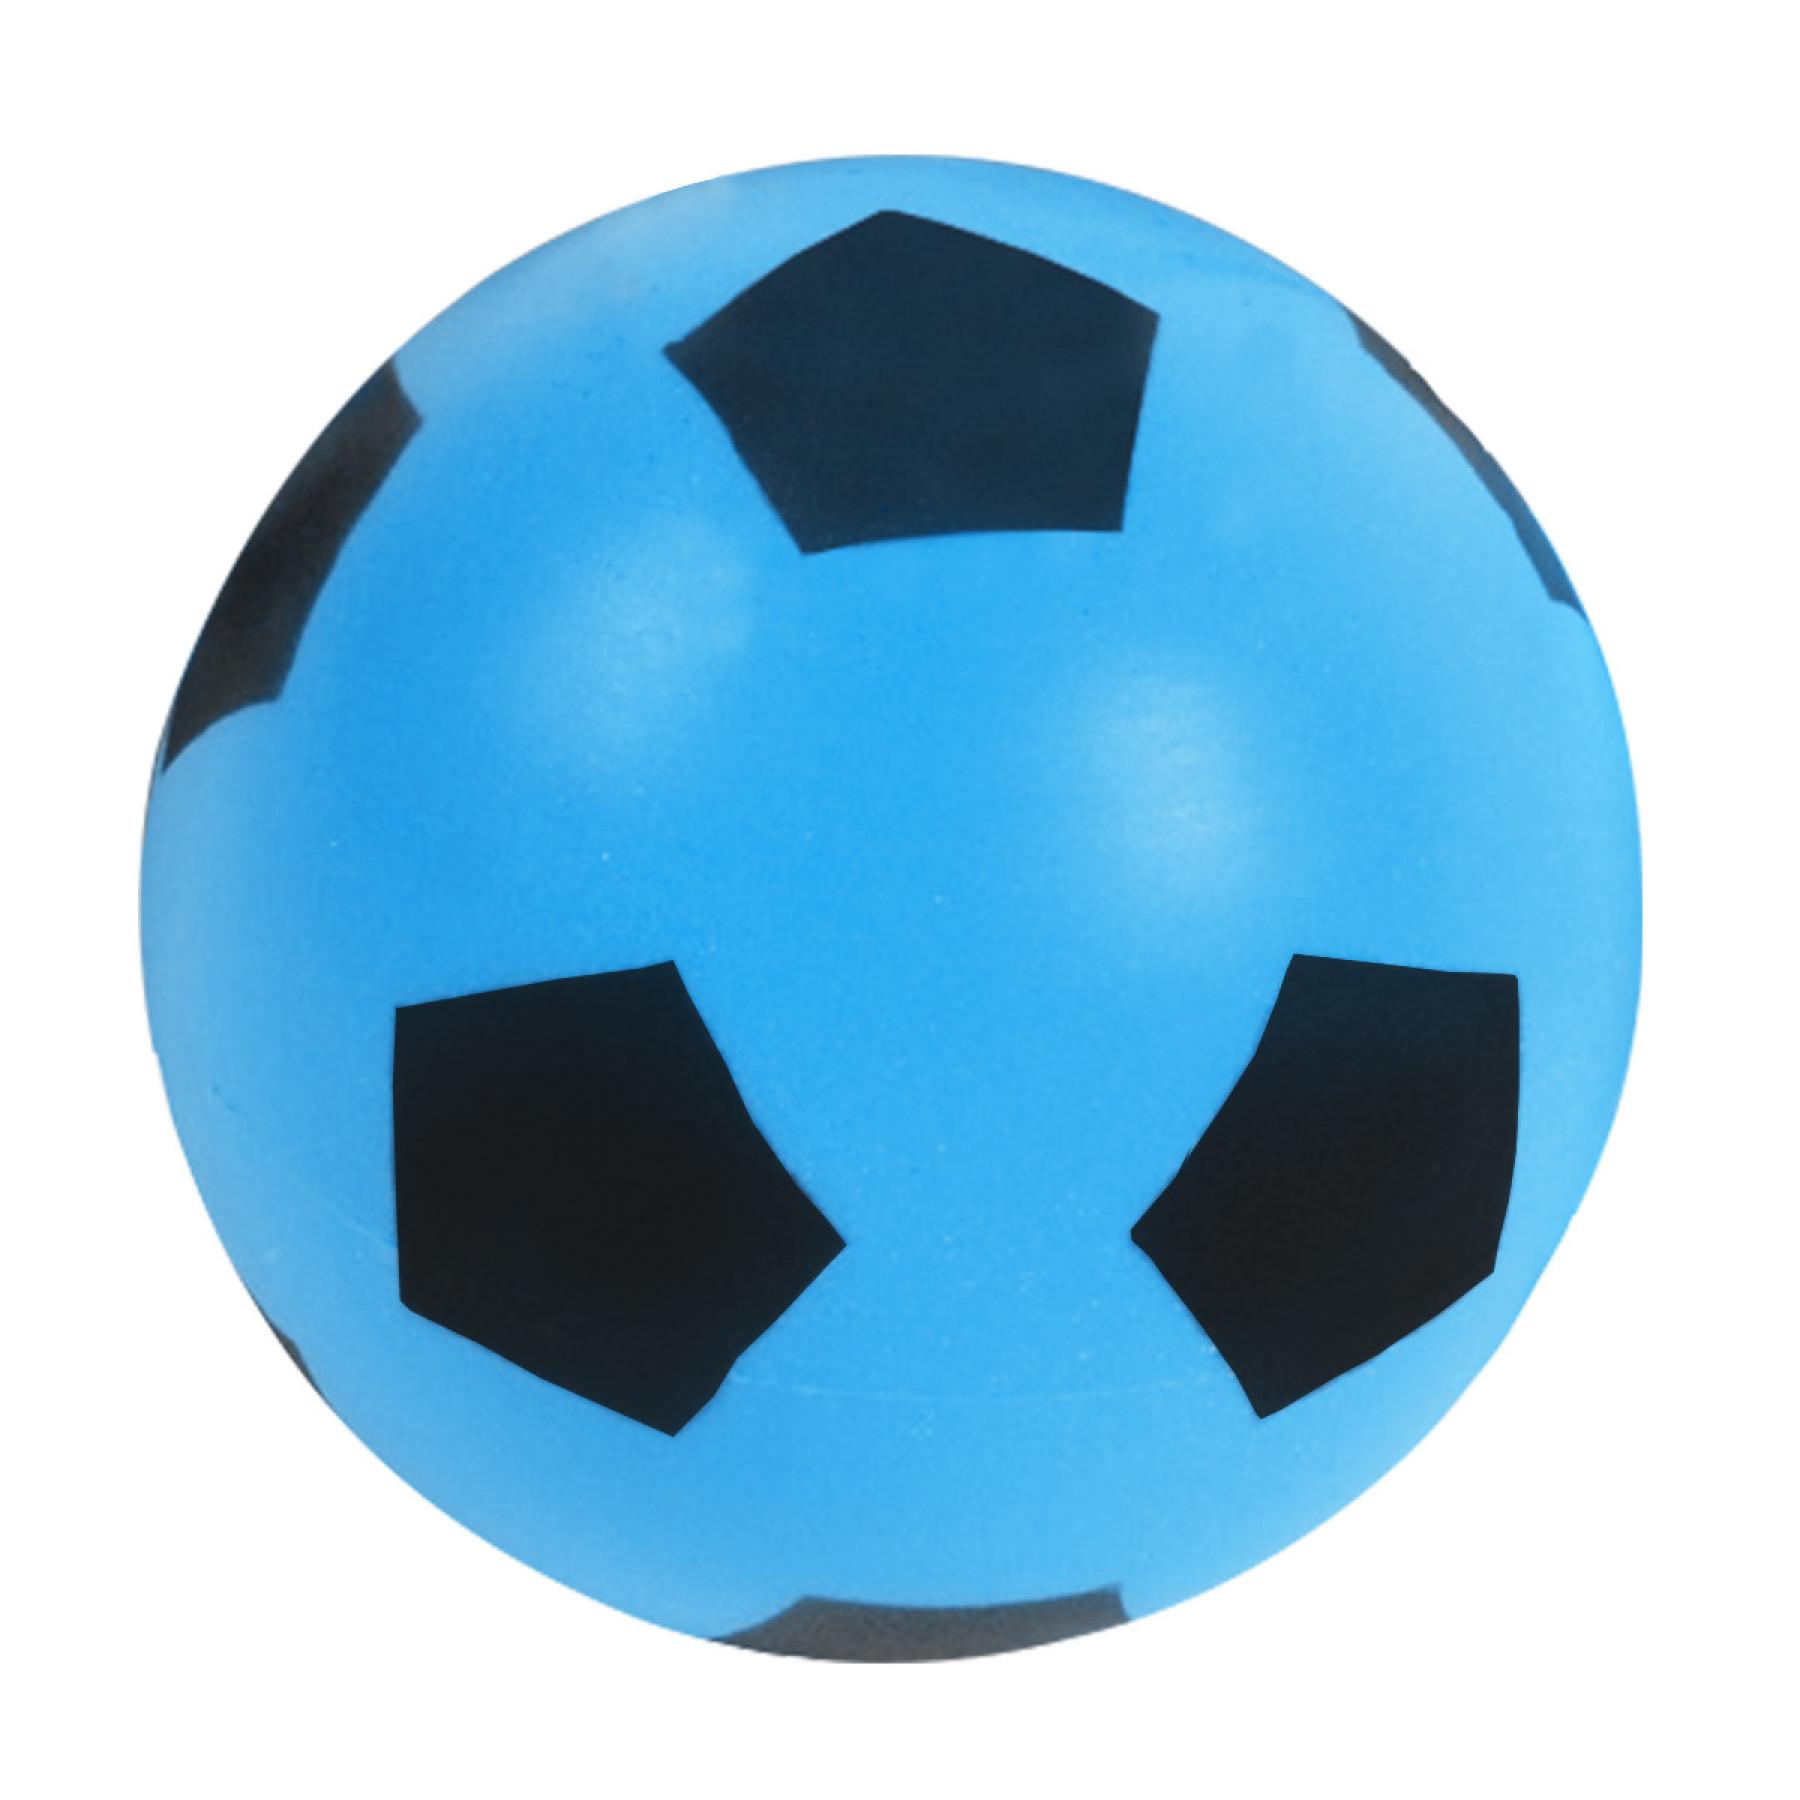 Balle mousse bicolore 17.5 cm Sporti France - Marques - Ballons